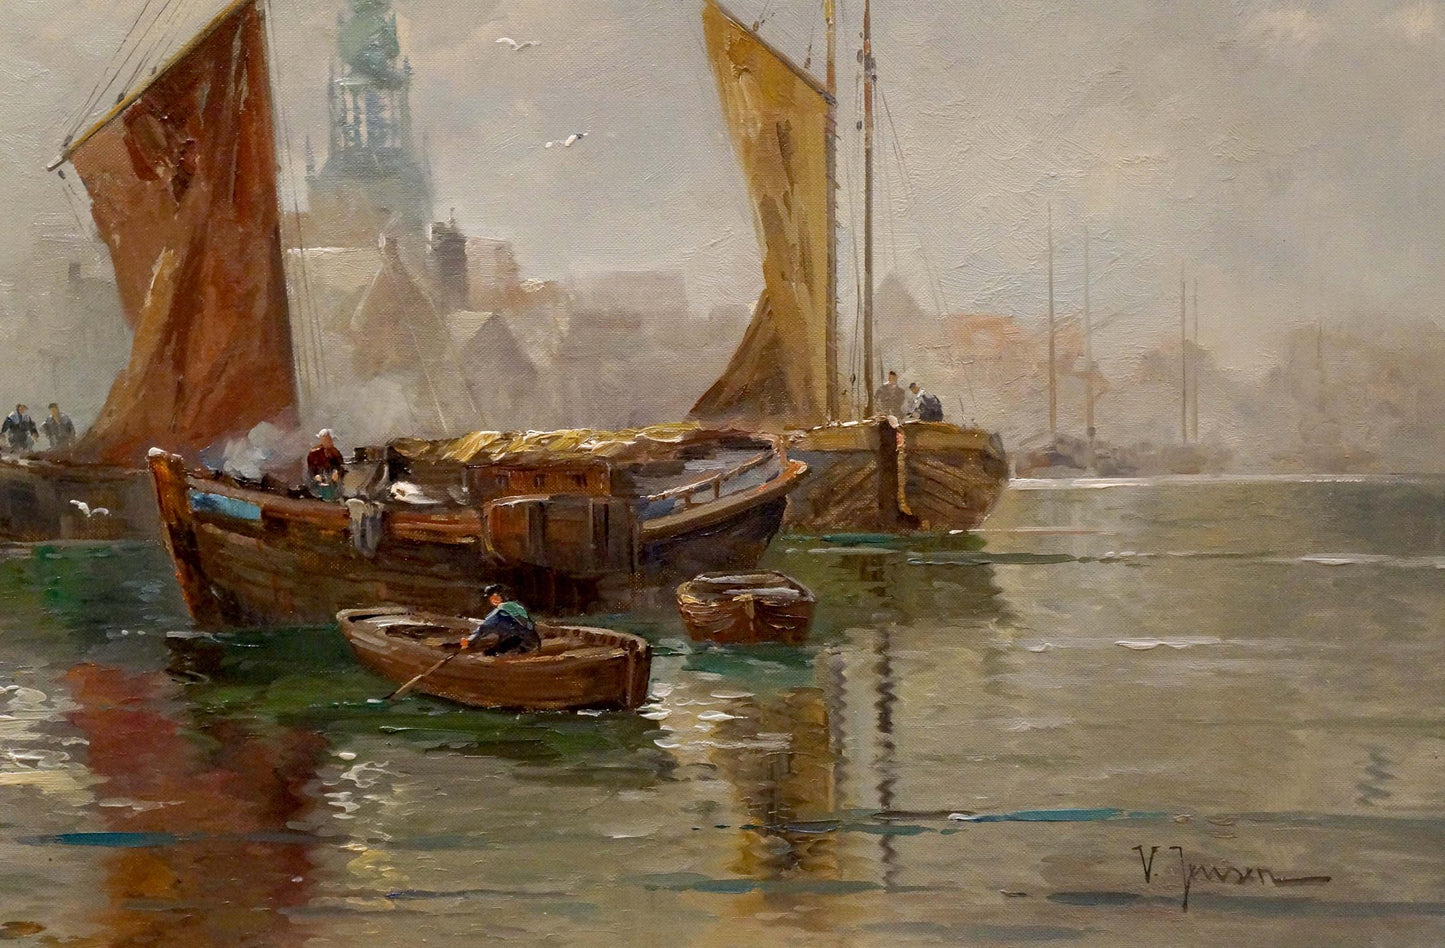 Oil painting Amsterdam V. Jensen